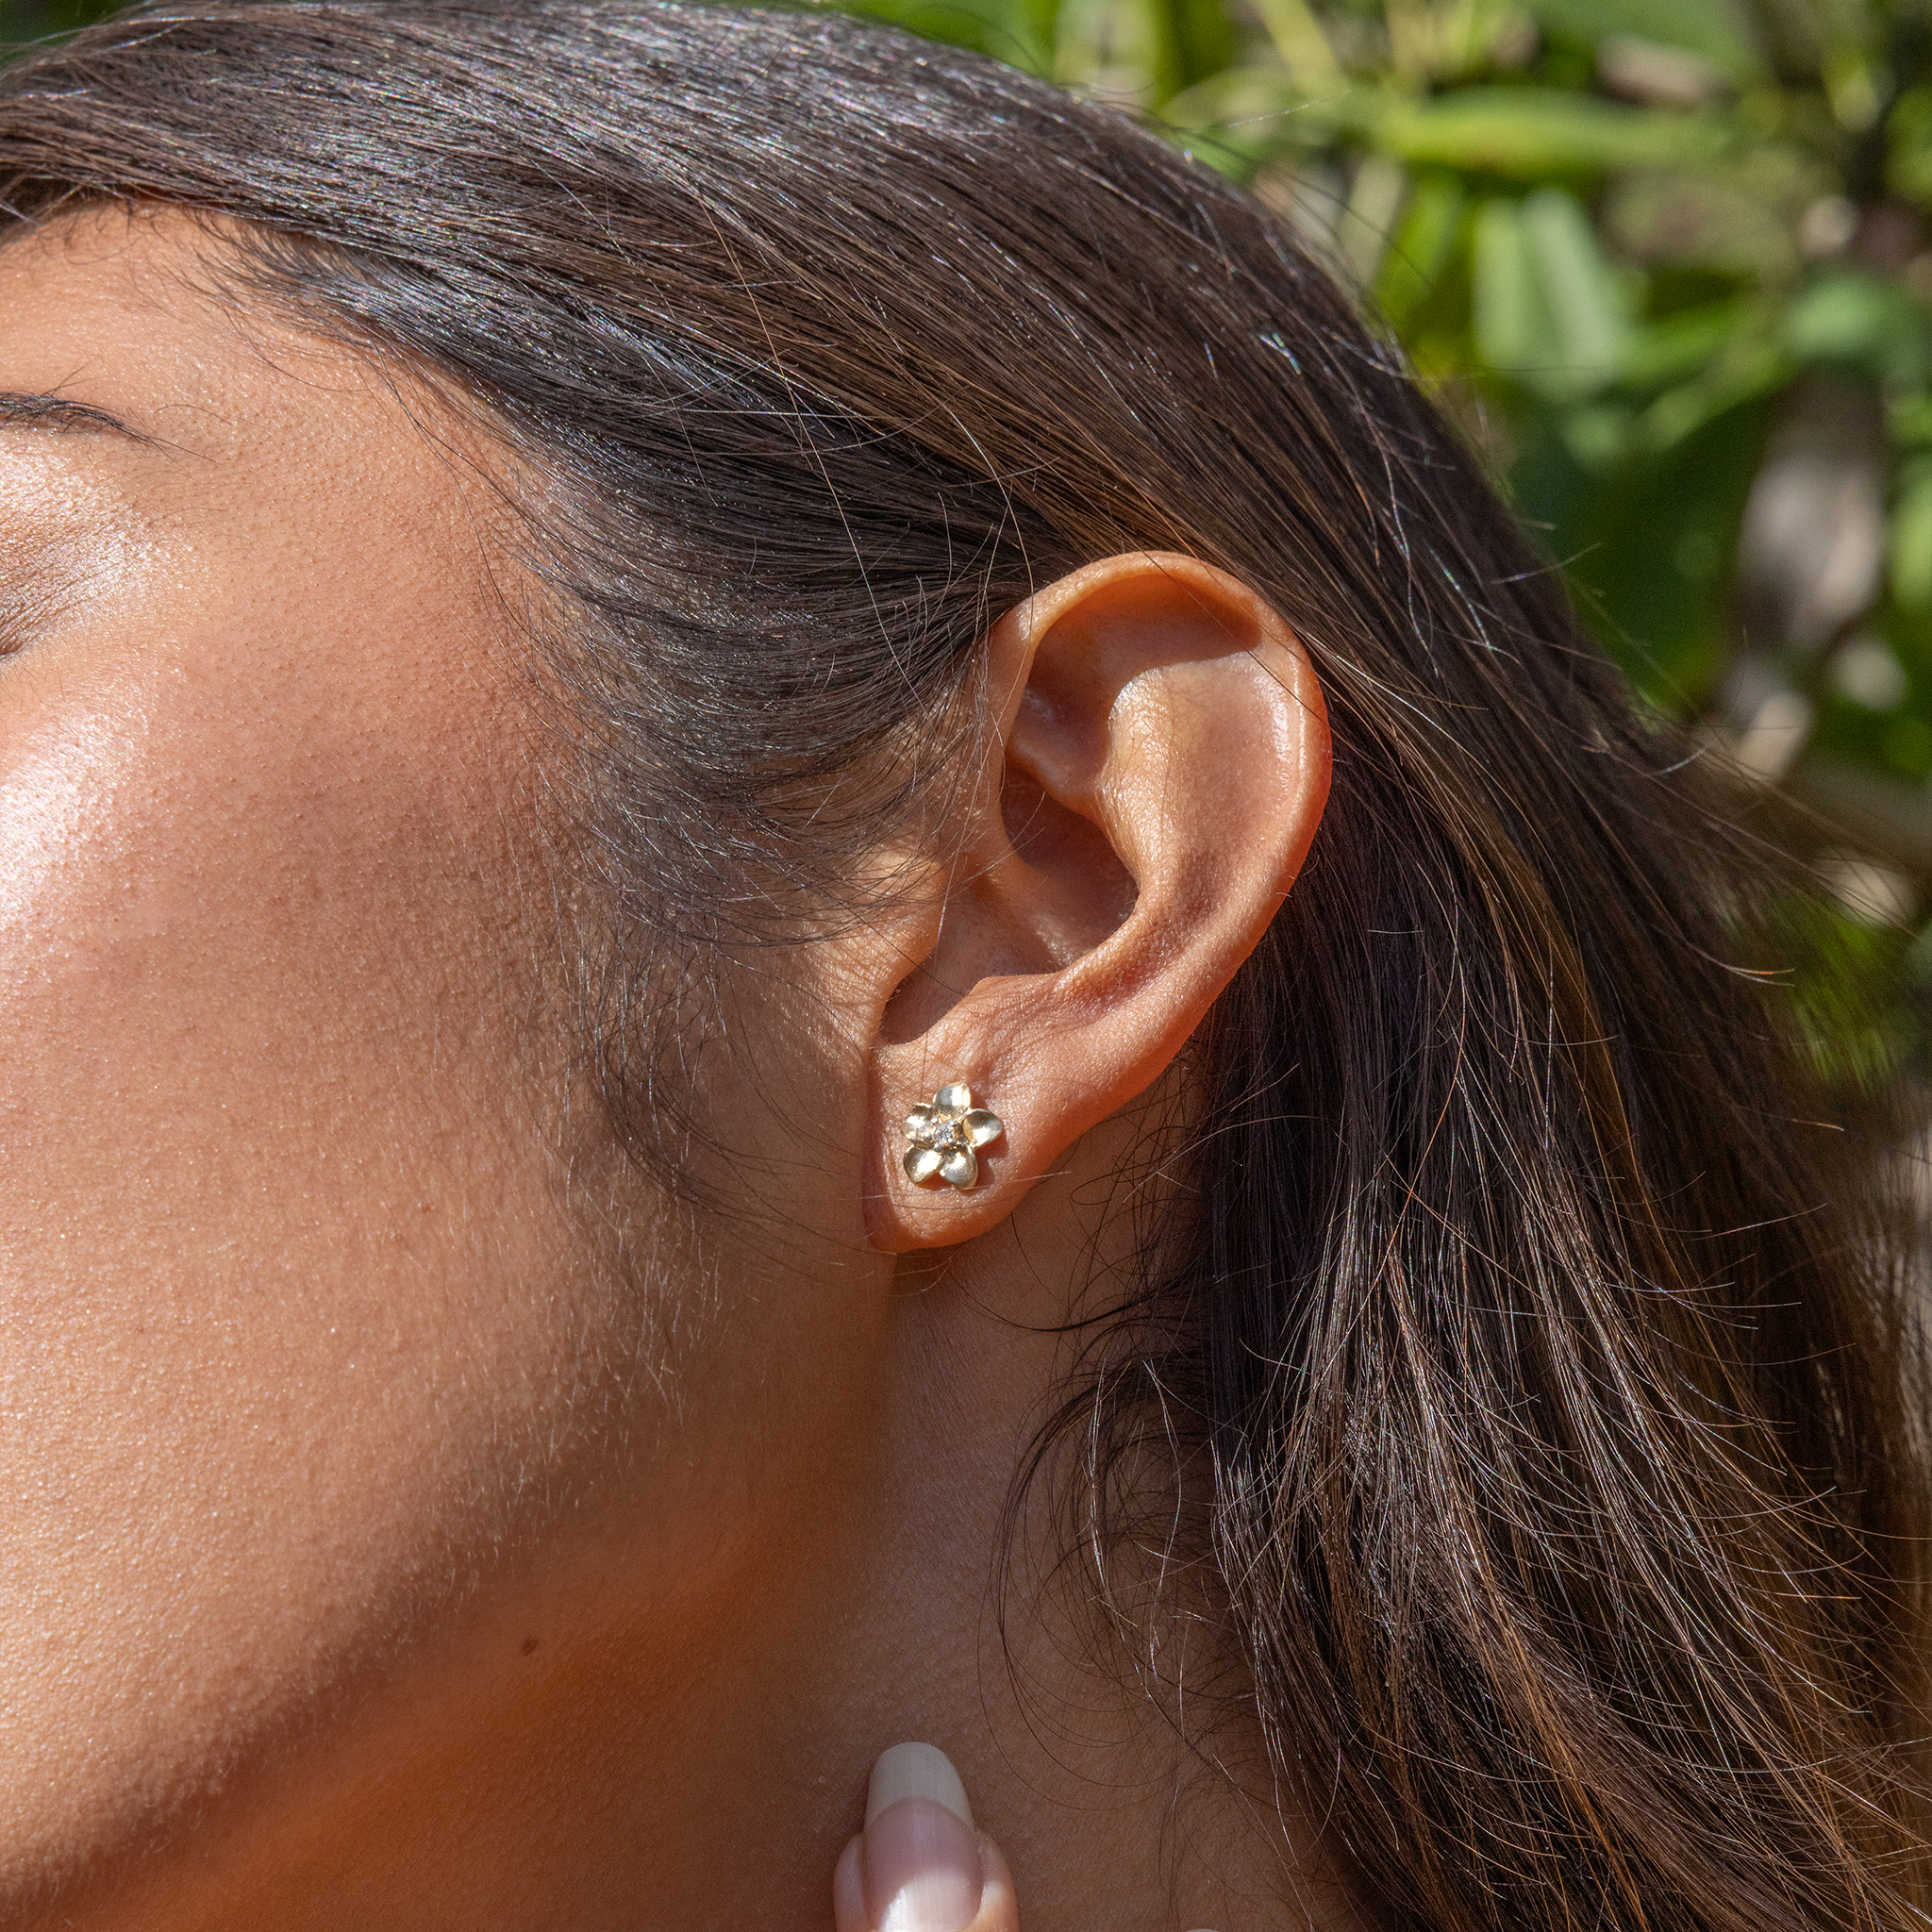 Plumeria-Ohrringe in Gold mit Diamanten – 9 mm